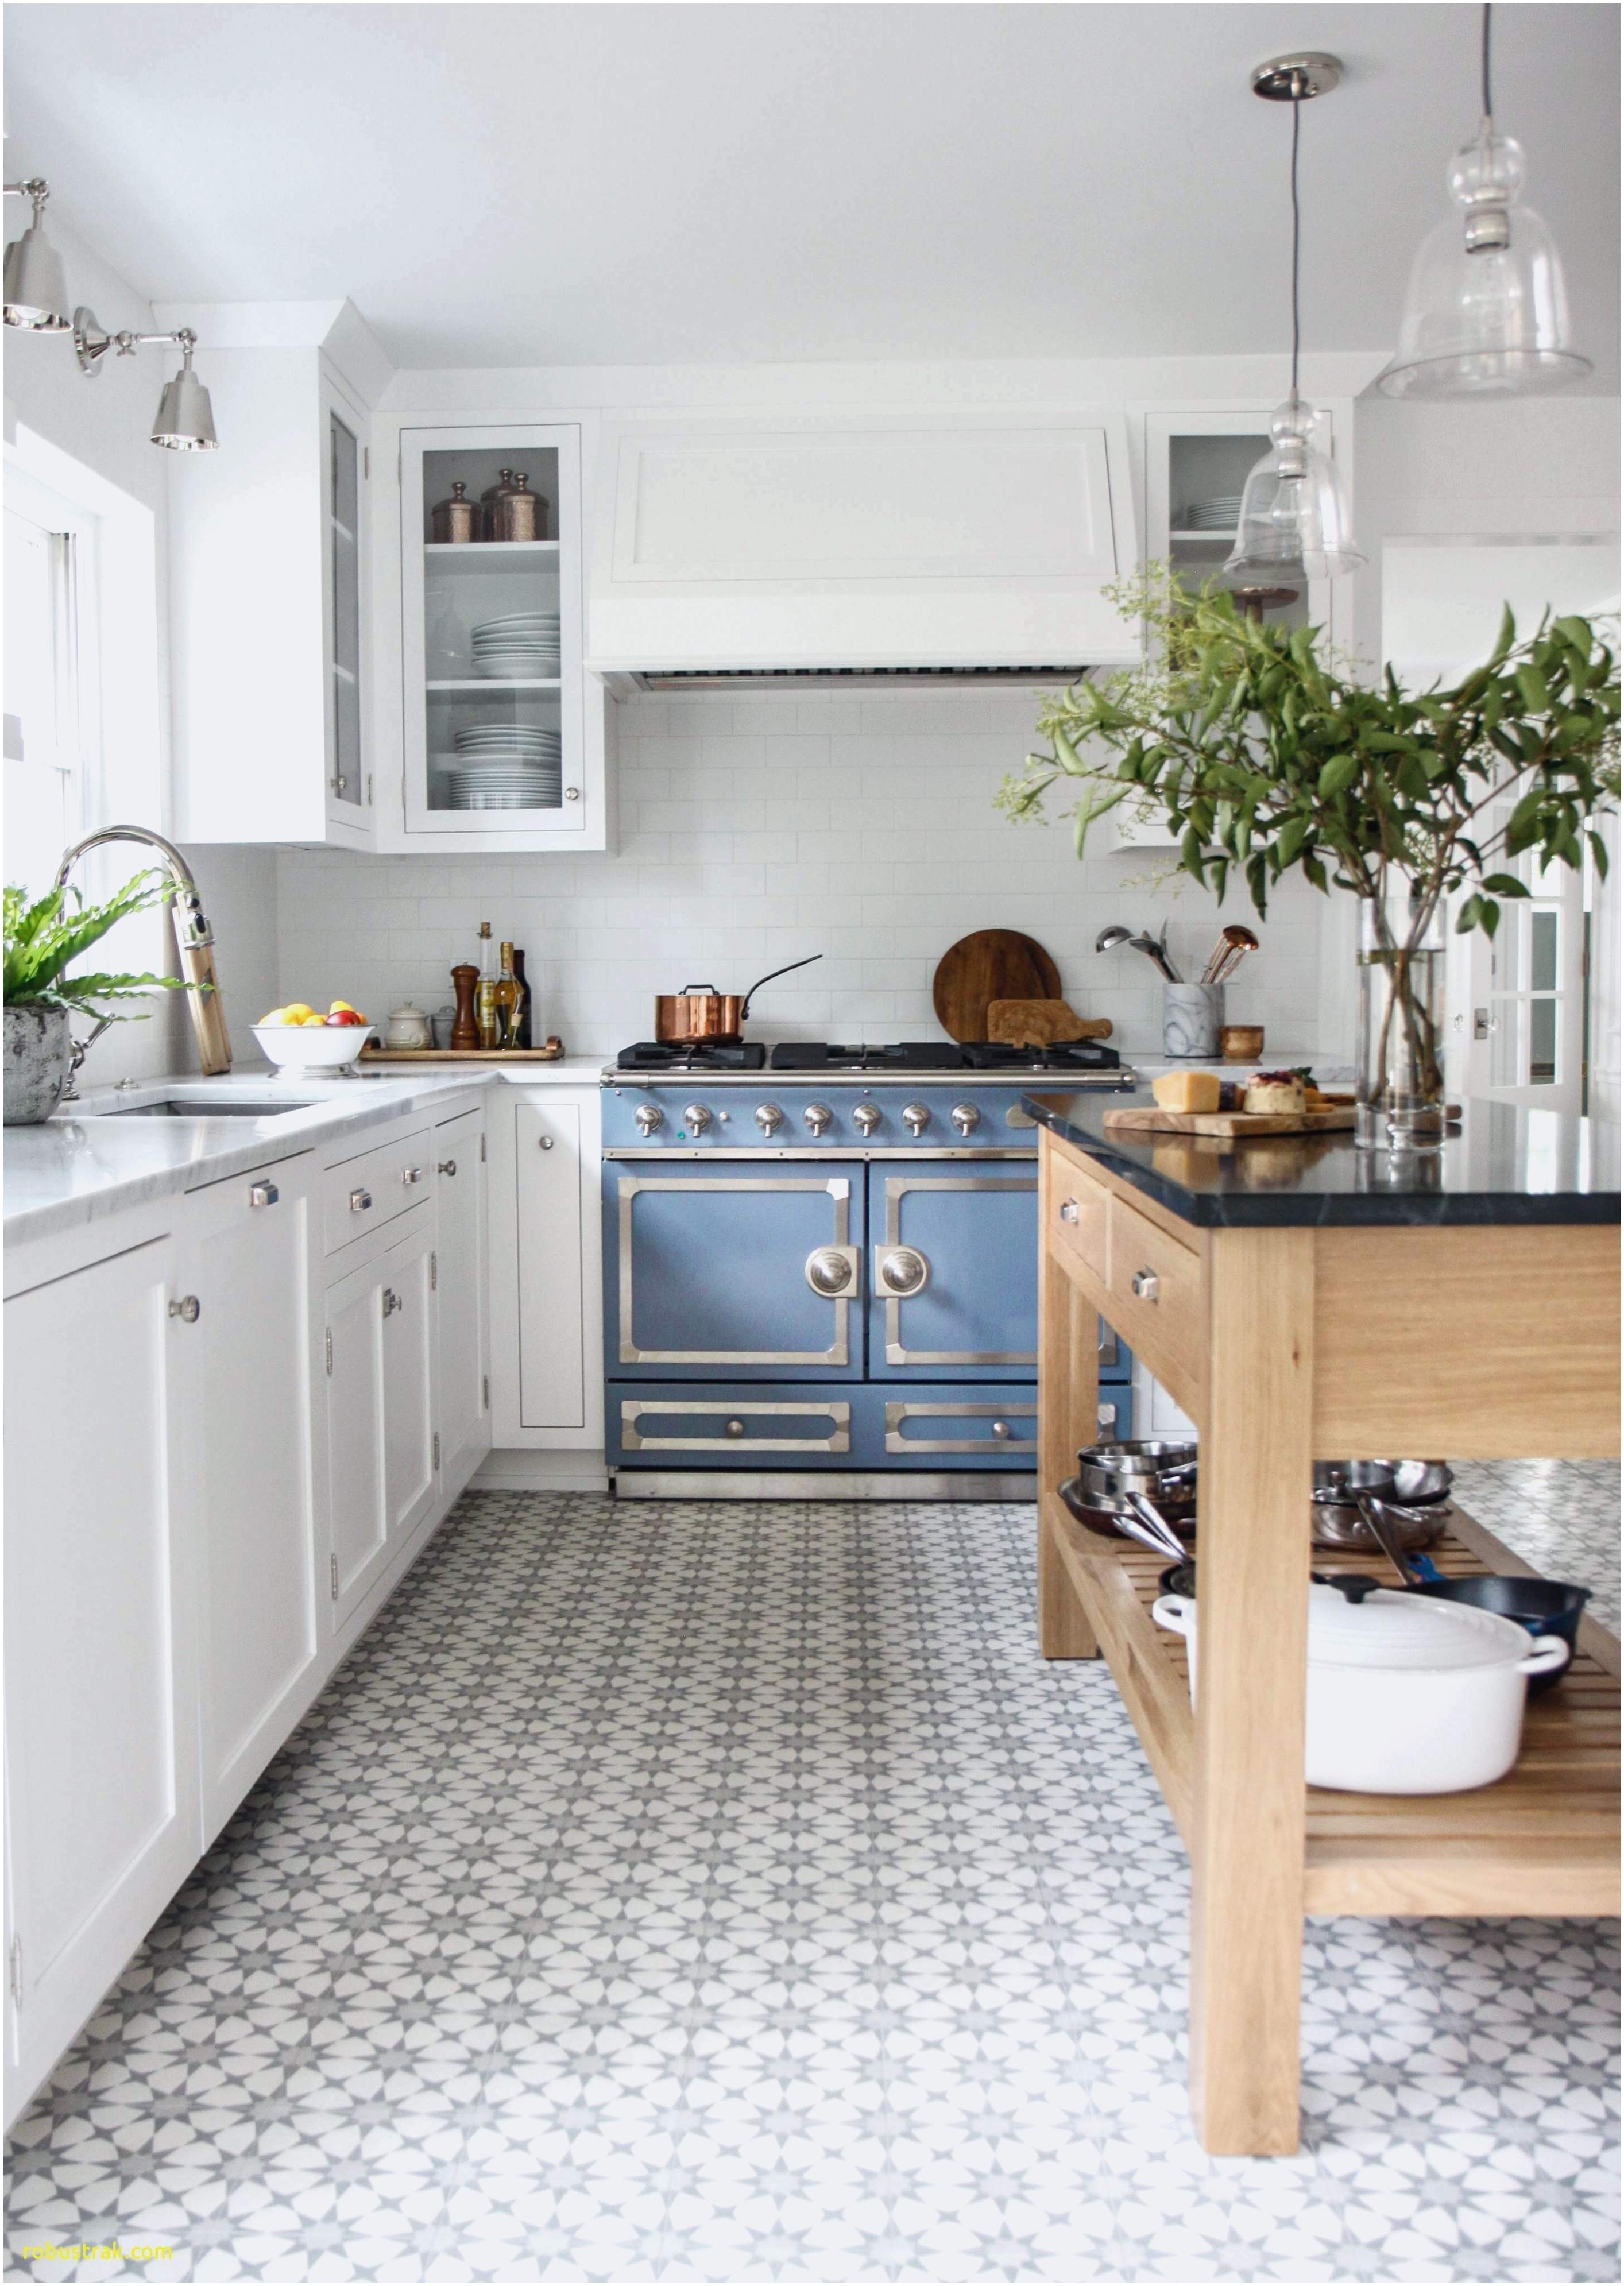 track lighting inspirational to luxury modern bedroom kitchen design modern new exclusive kitchen designs alluring kitchen